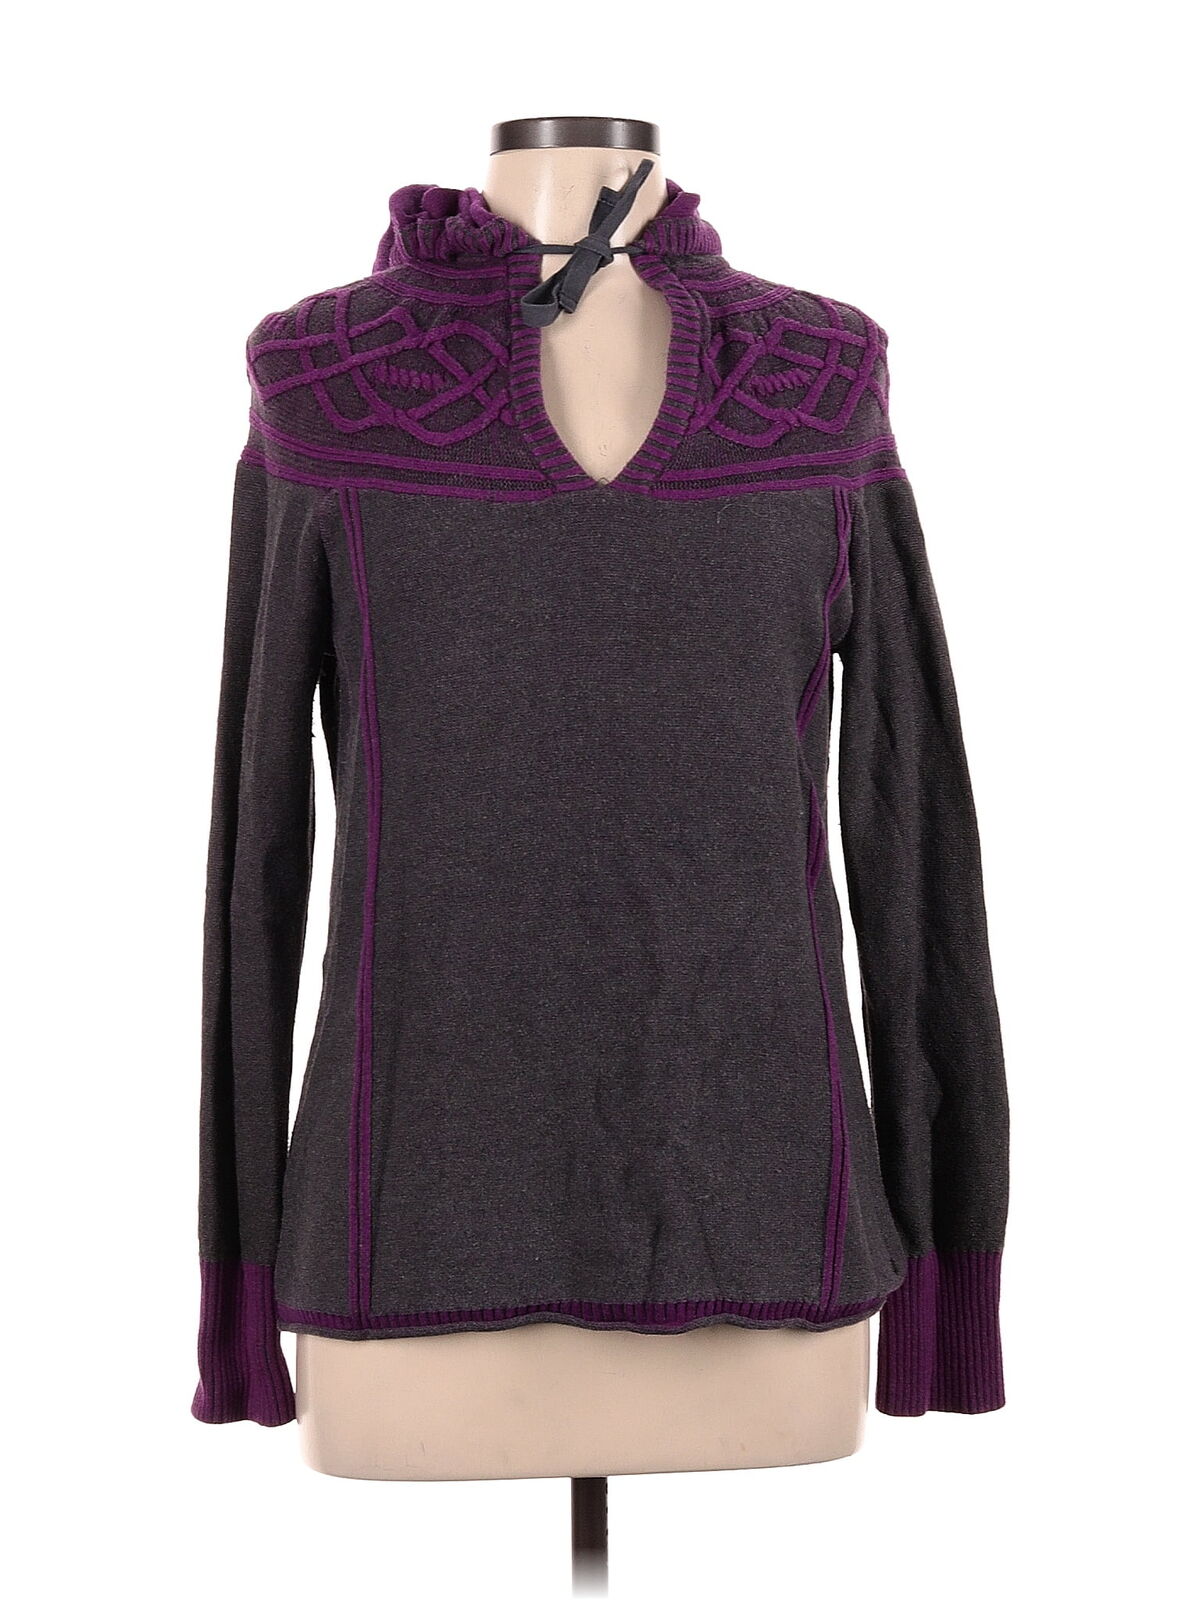 Eddie Bauer Women Purple Pullover Sweater M - image 1